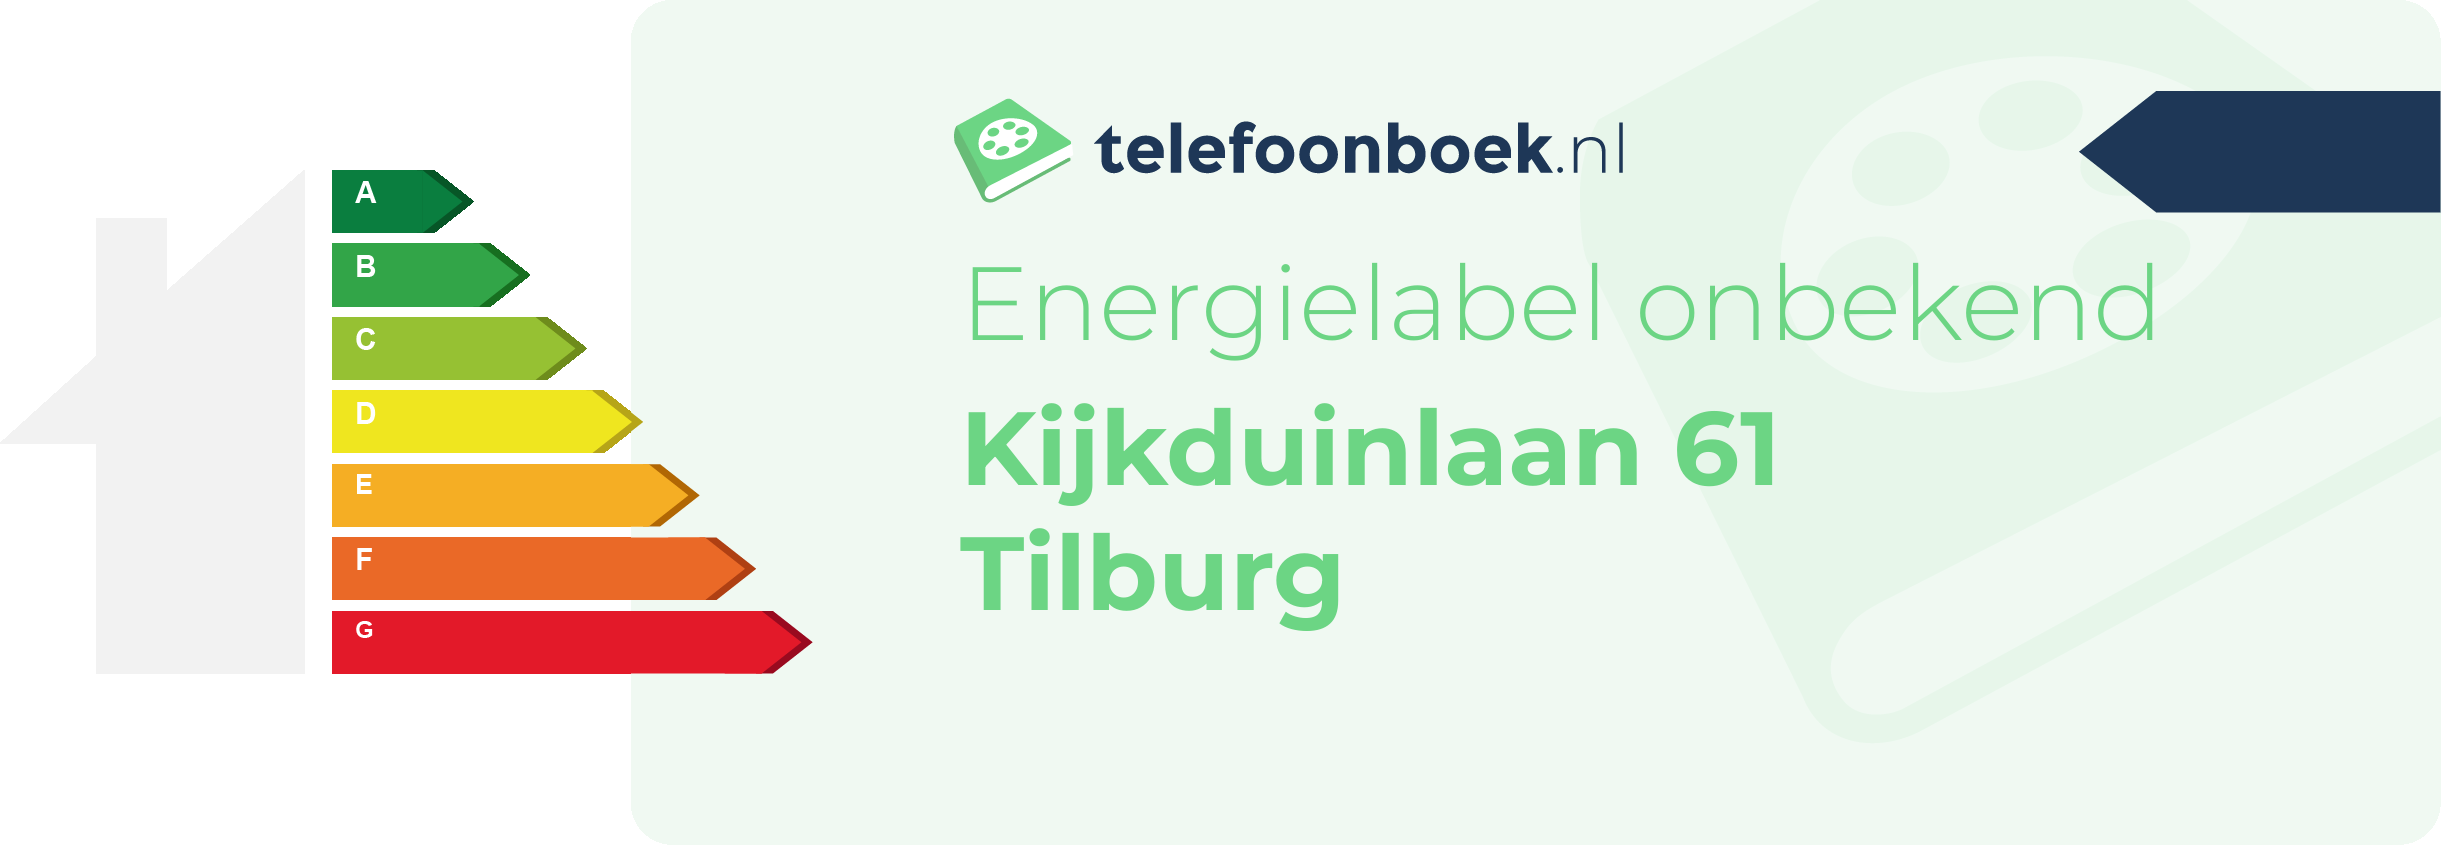 Energielabel Kijkduinlaan 61 Tilburg